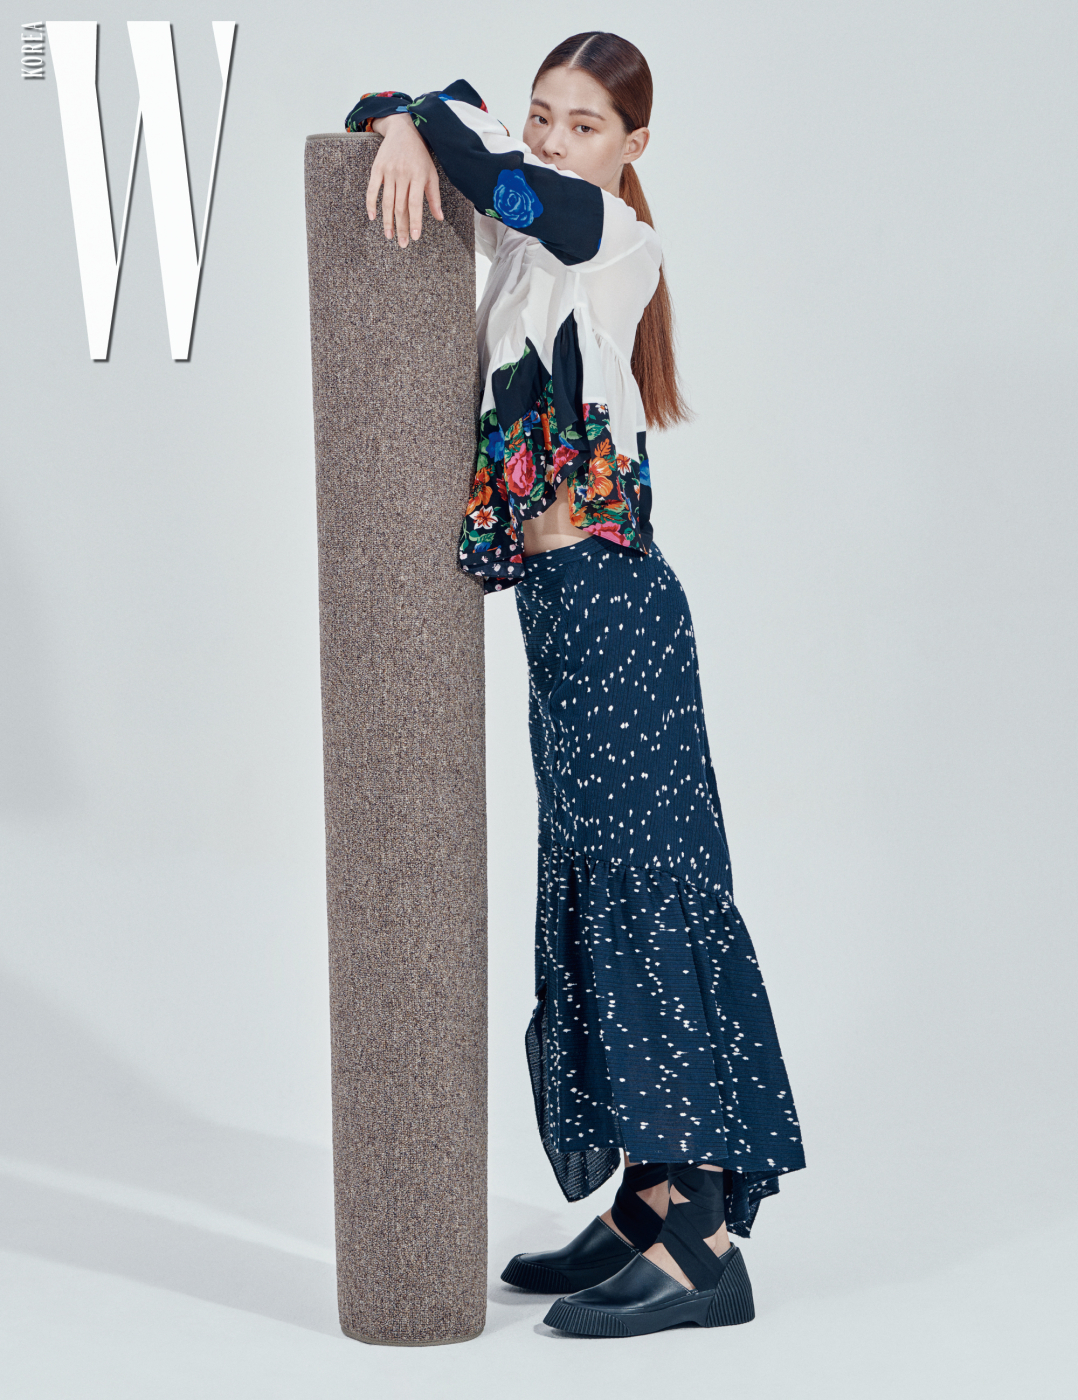 김아현이 입은 꽃무늬 패치워크 톱, 점무늬 프릴 스커트, 슈즈는 모두 3.1 Phillip Lim 제품.